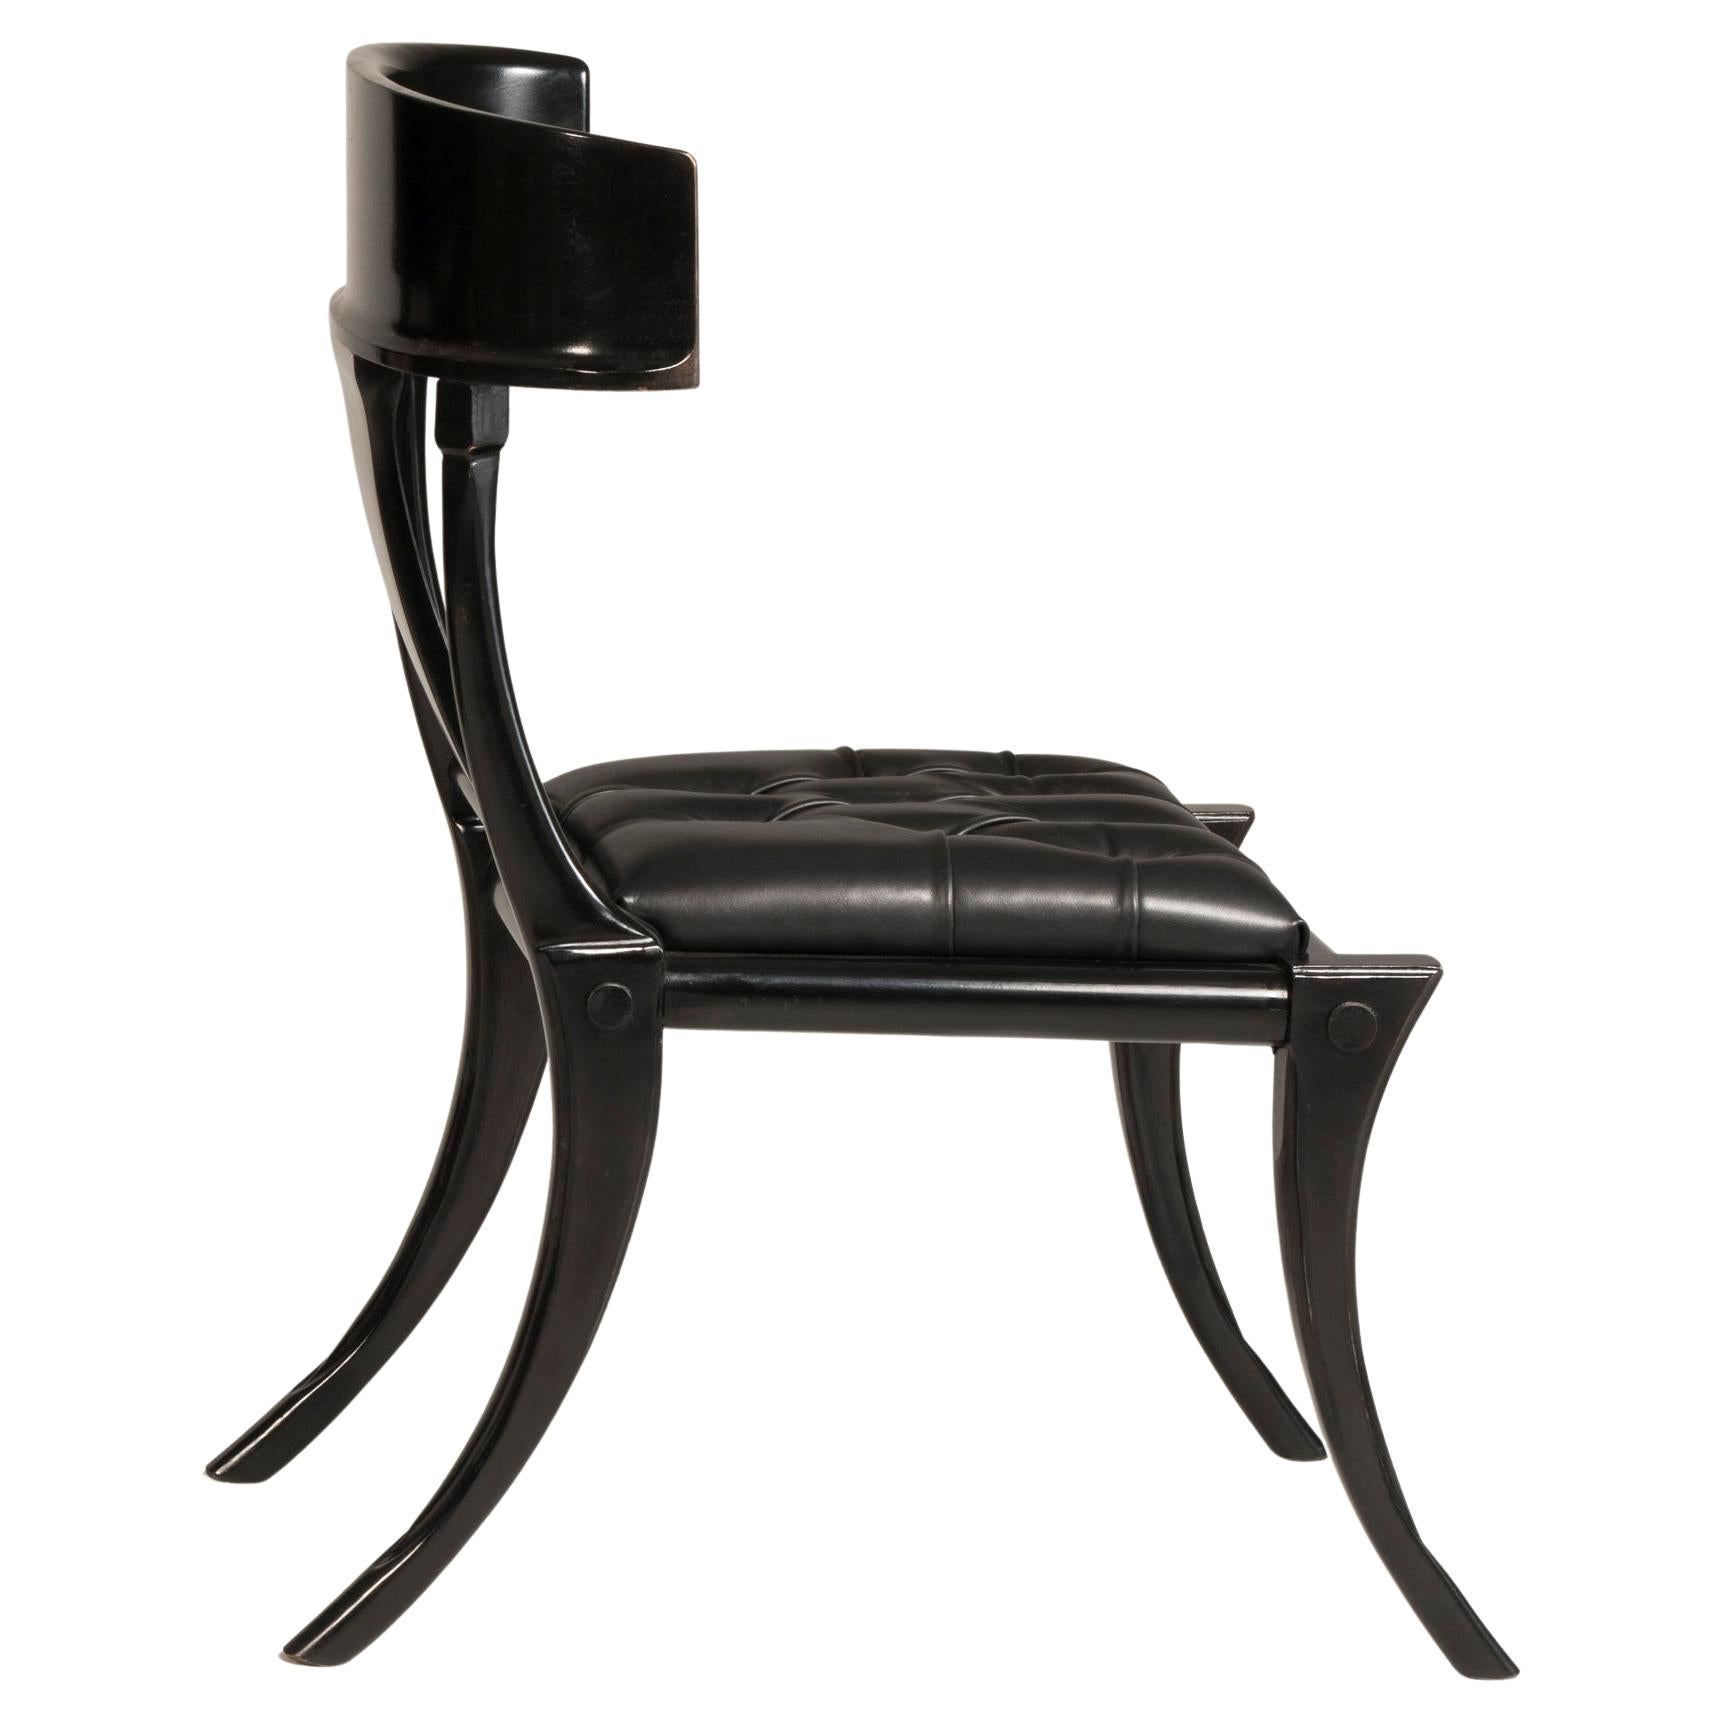 Schwarze Sessel mit schwarzem Ledersitz und Säbelbeinen aus Walnussholz, anpassbar